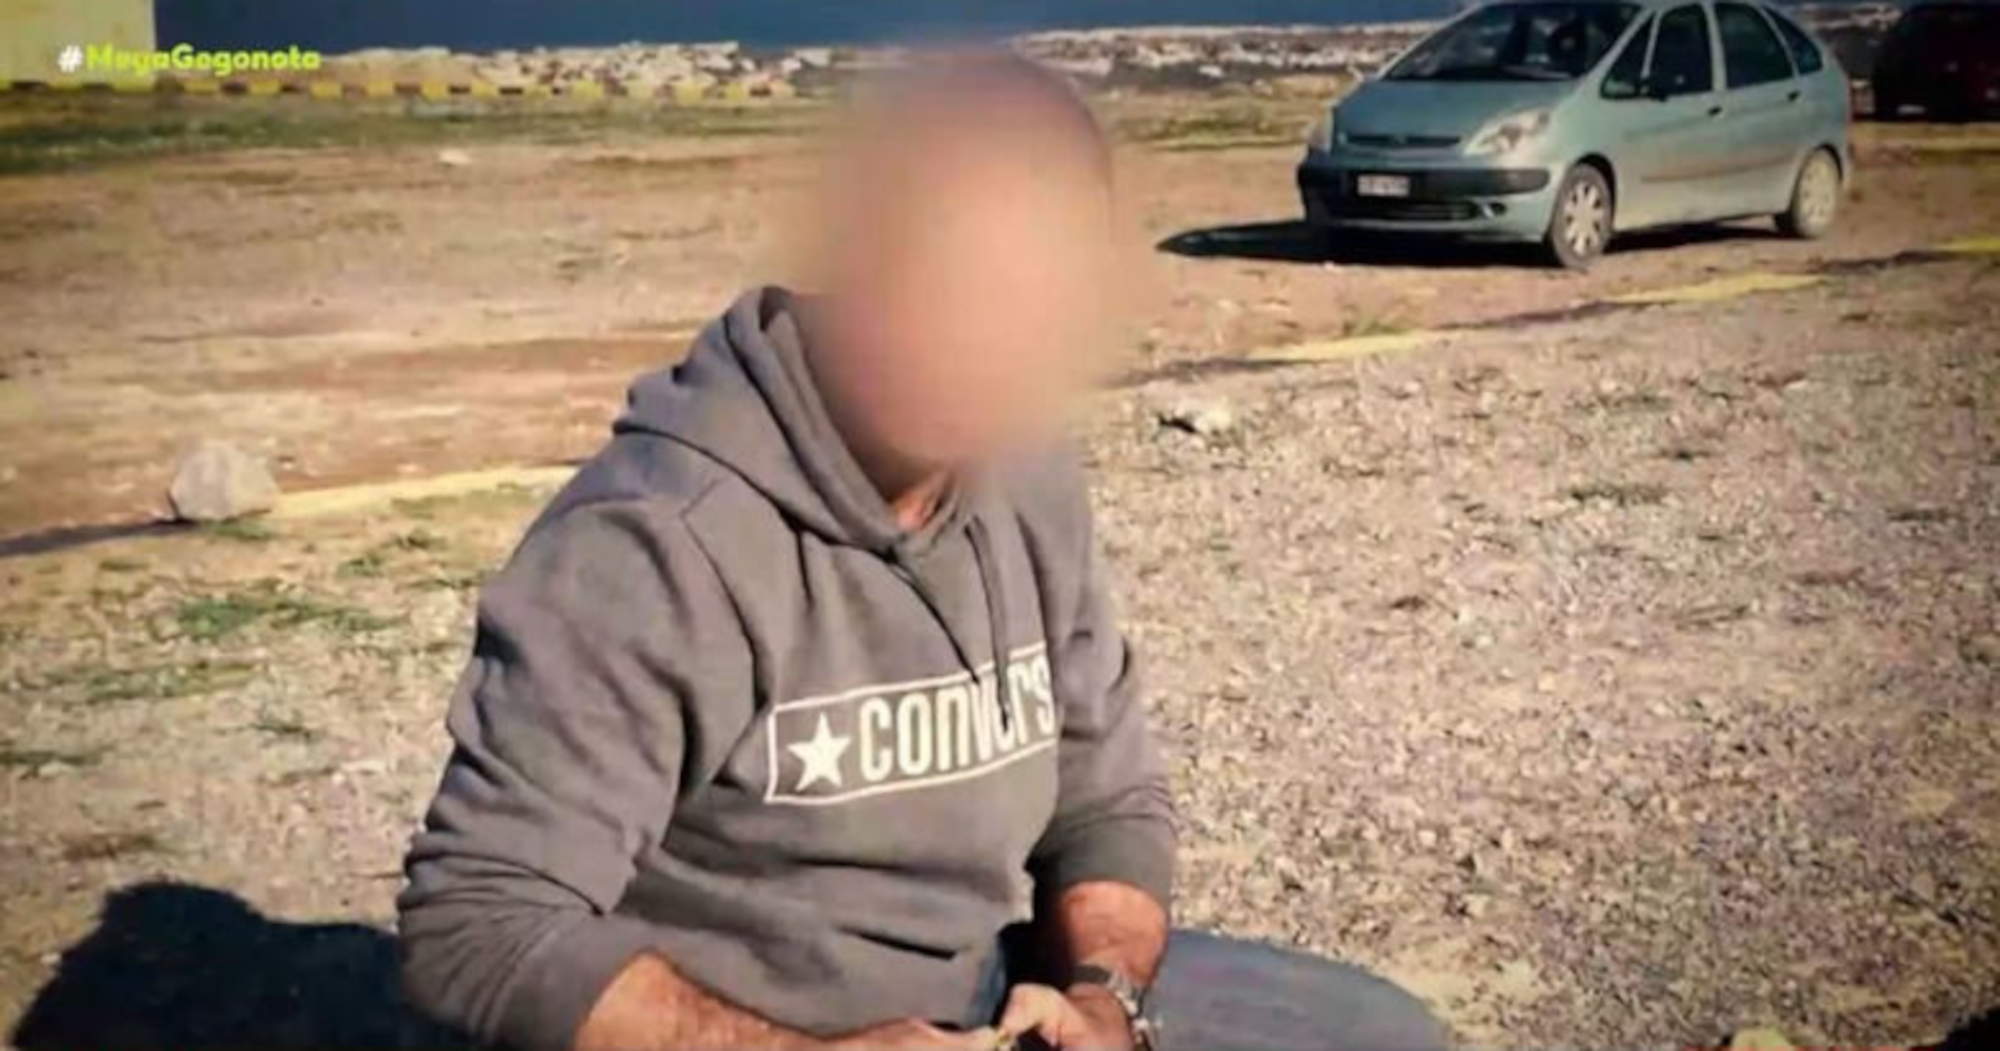 Ο προπονητής πολεμικών τεχνών που κατηγορείται για ανορθόδοξες πρακτικές από τους μαθητές του στην Κρήτη